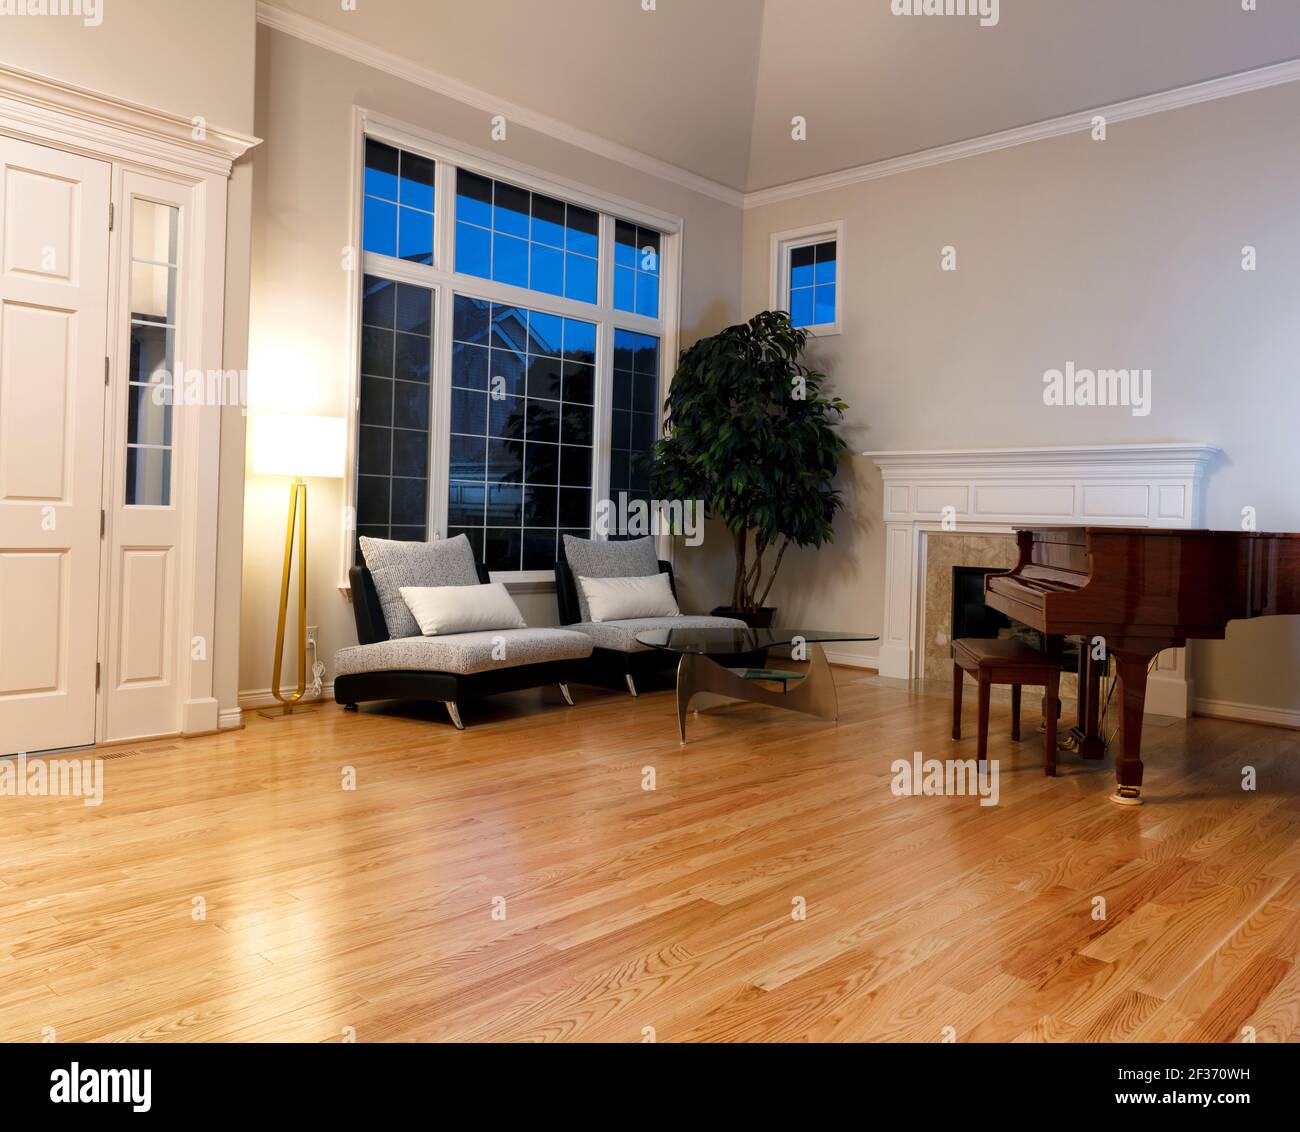 Modernes Wohnzimmer mit echtem Eichenholzboden, Klavier, Kamin und großen Fenstern während der Abendzeit Stockfoto